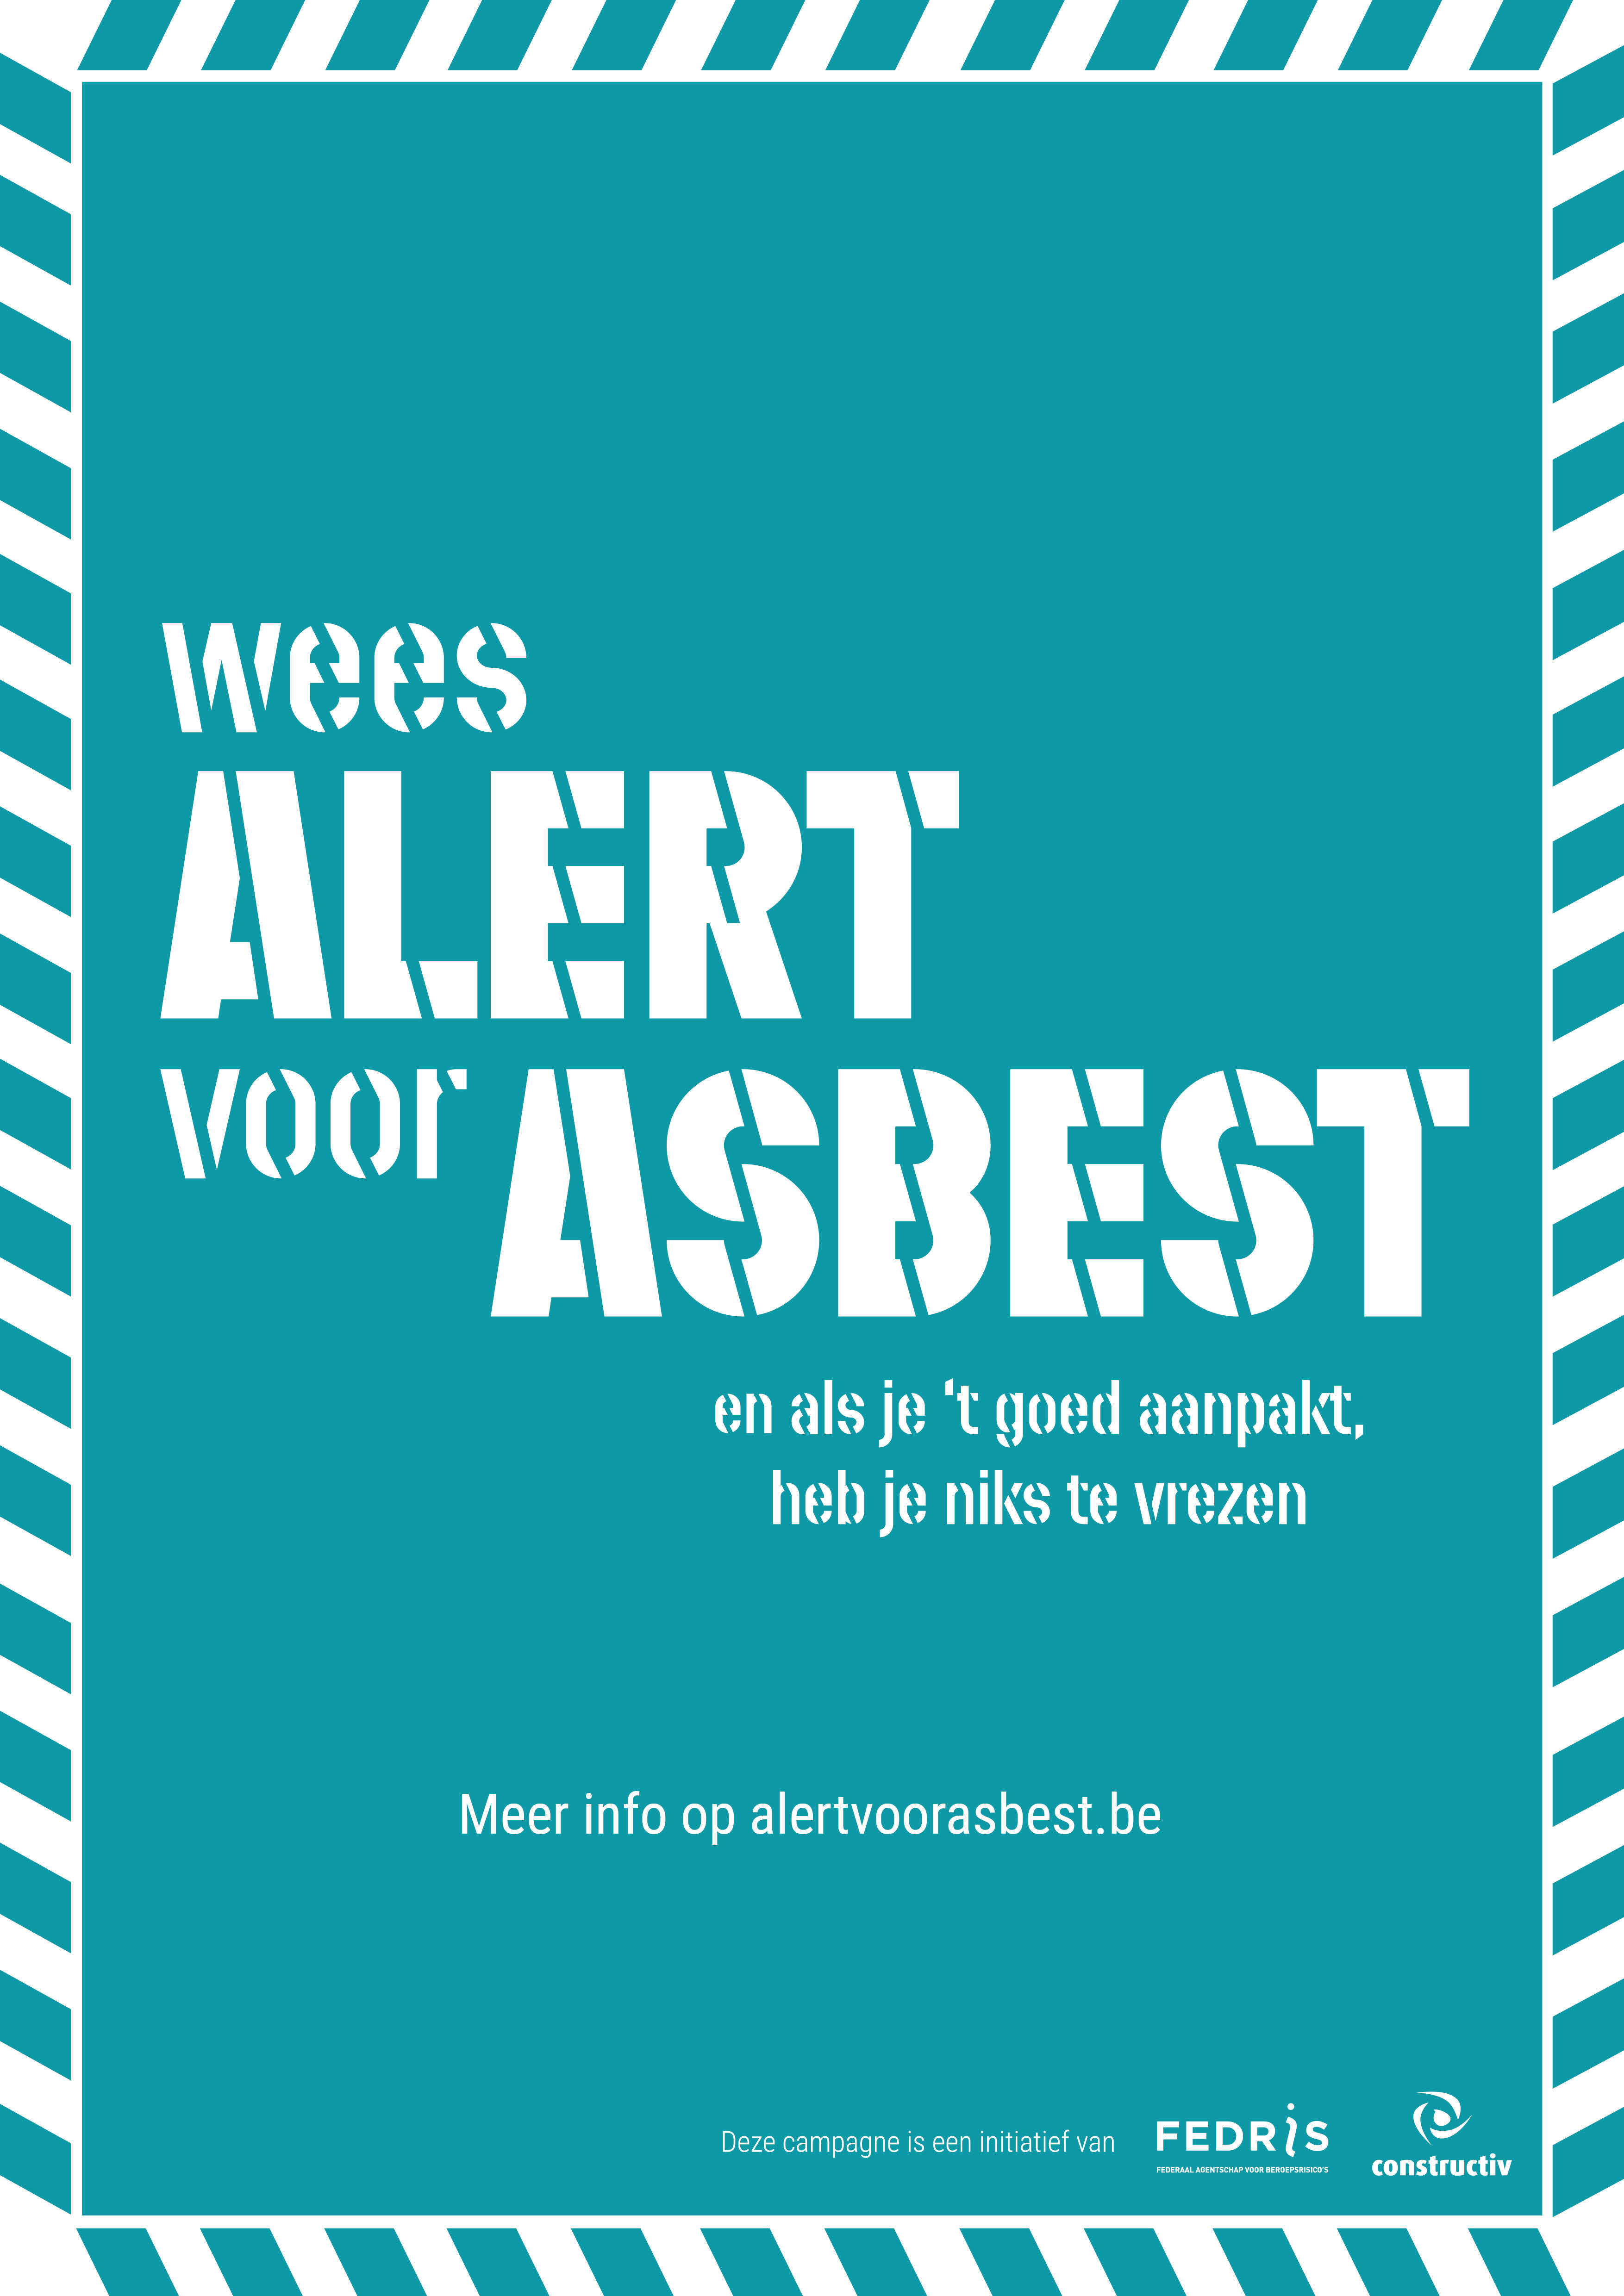 campagnebeeld Wees alert voor asbest met groene achtergrond en witte letters